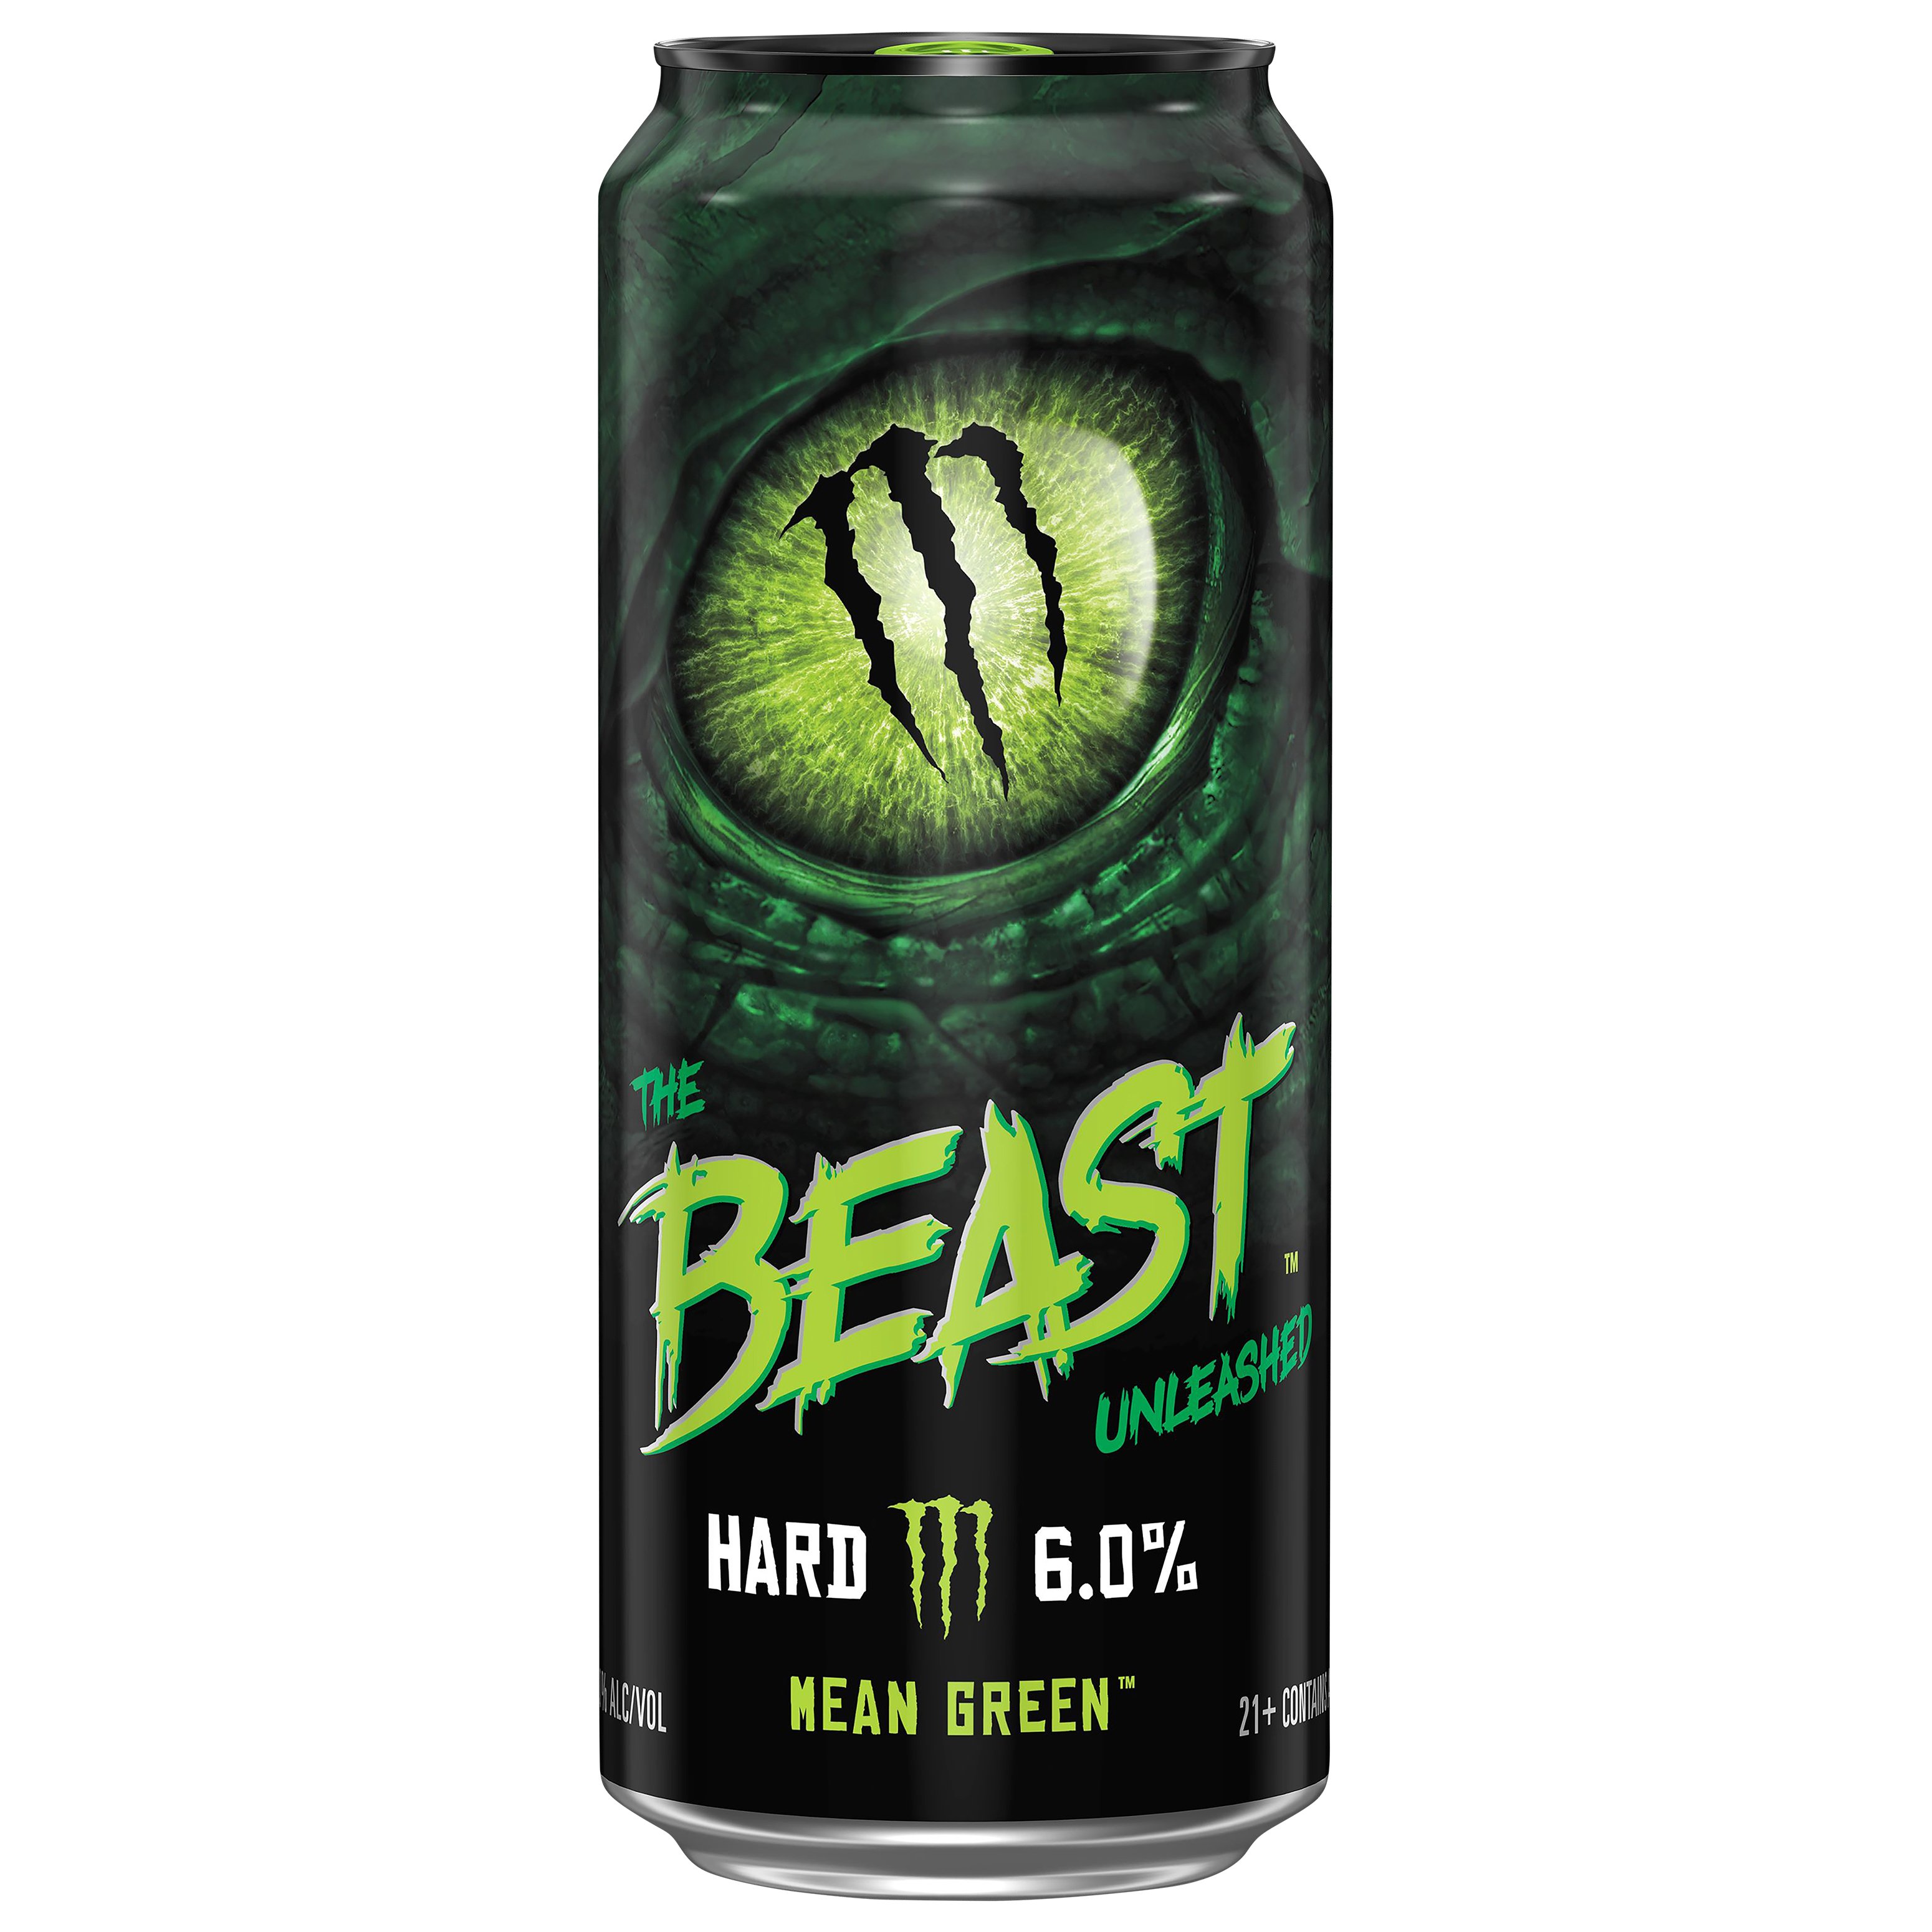 The Beast Unleashed Mean Green Hard Seltzer Shop Malt Beverages